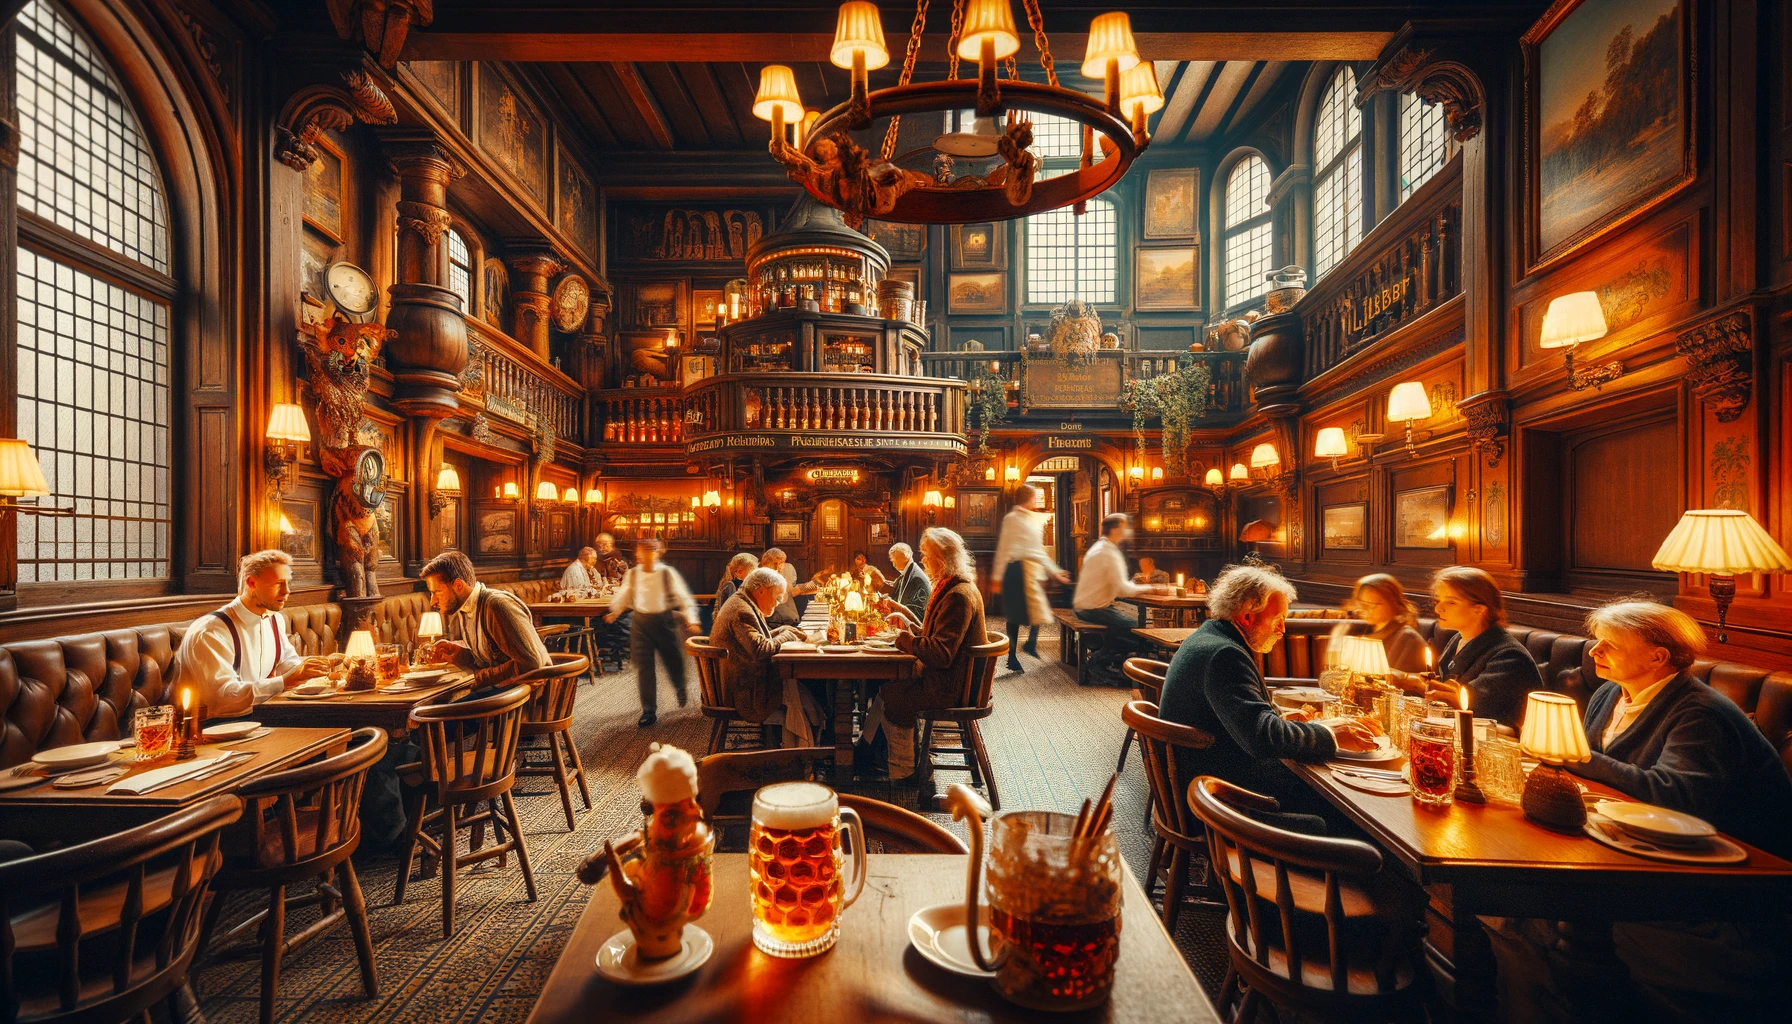 Przytulne i historyczne wnętrze restauracji Auerbachs Keller w Lipsku z podawaną tradycyjną niemiecką kuchnią